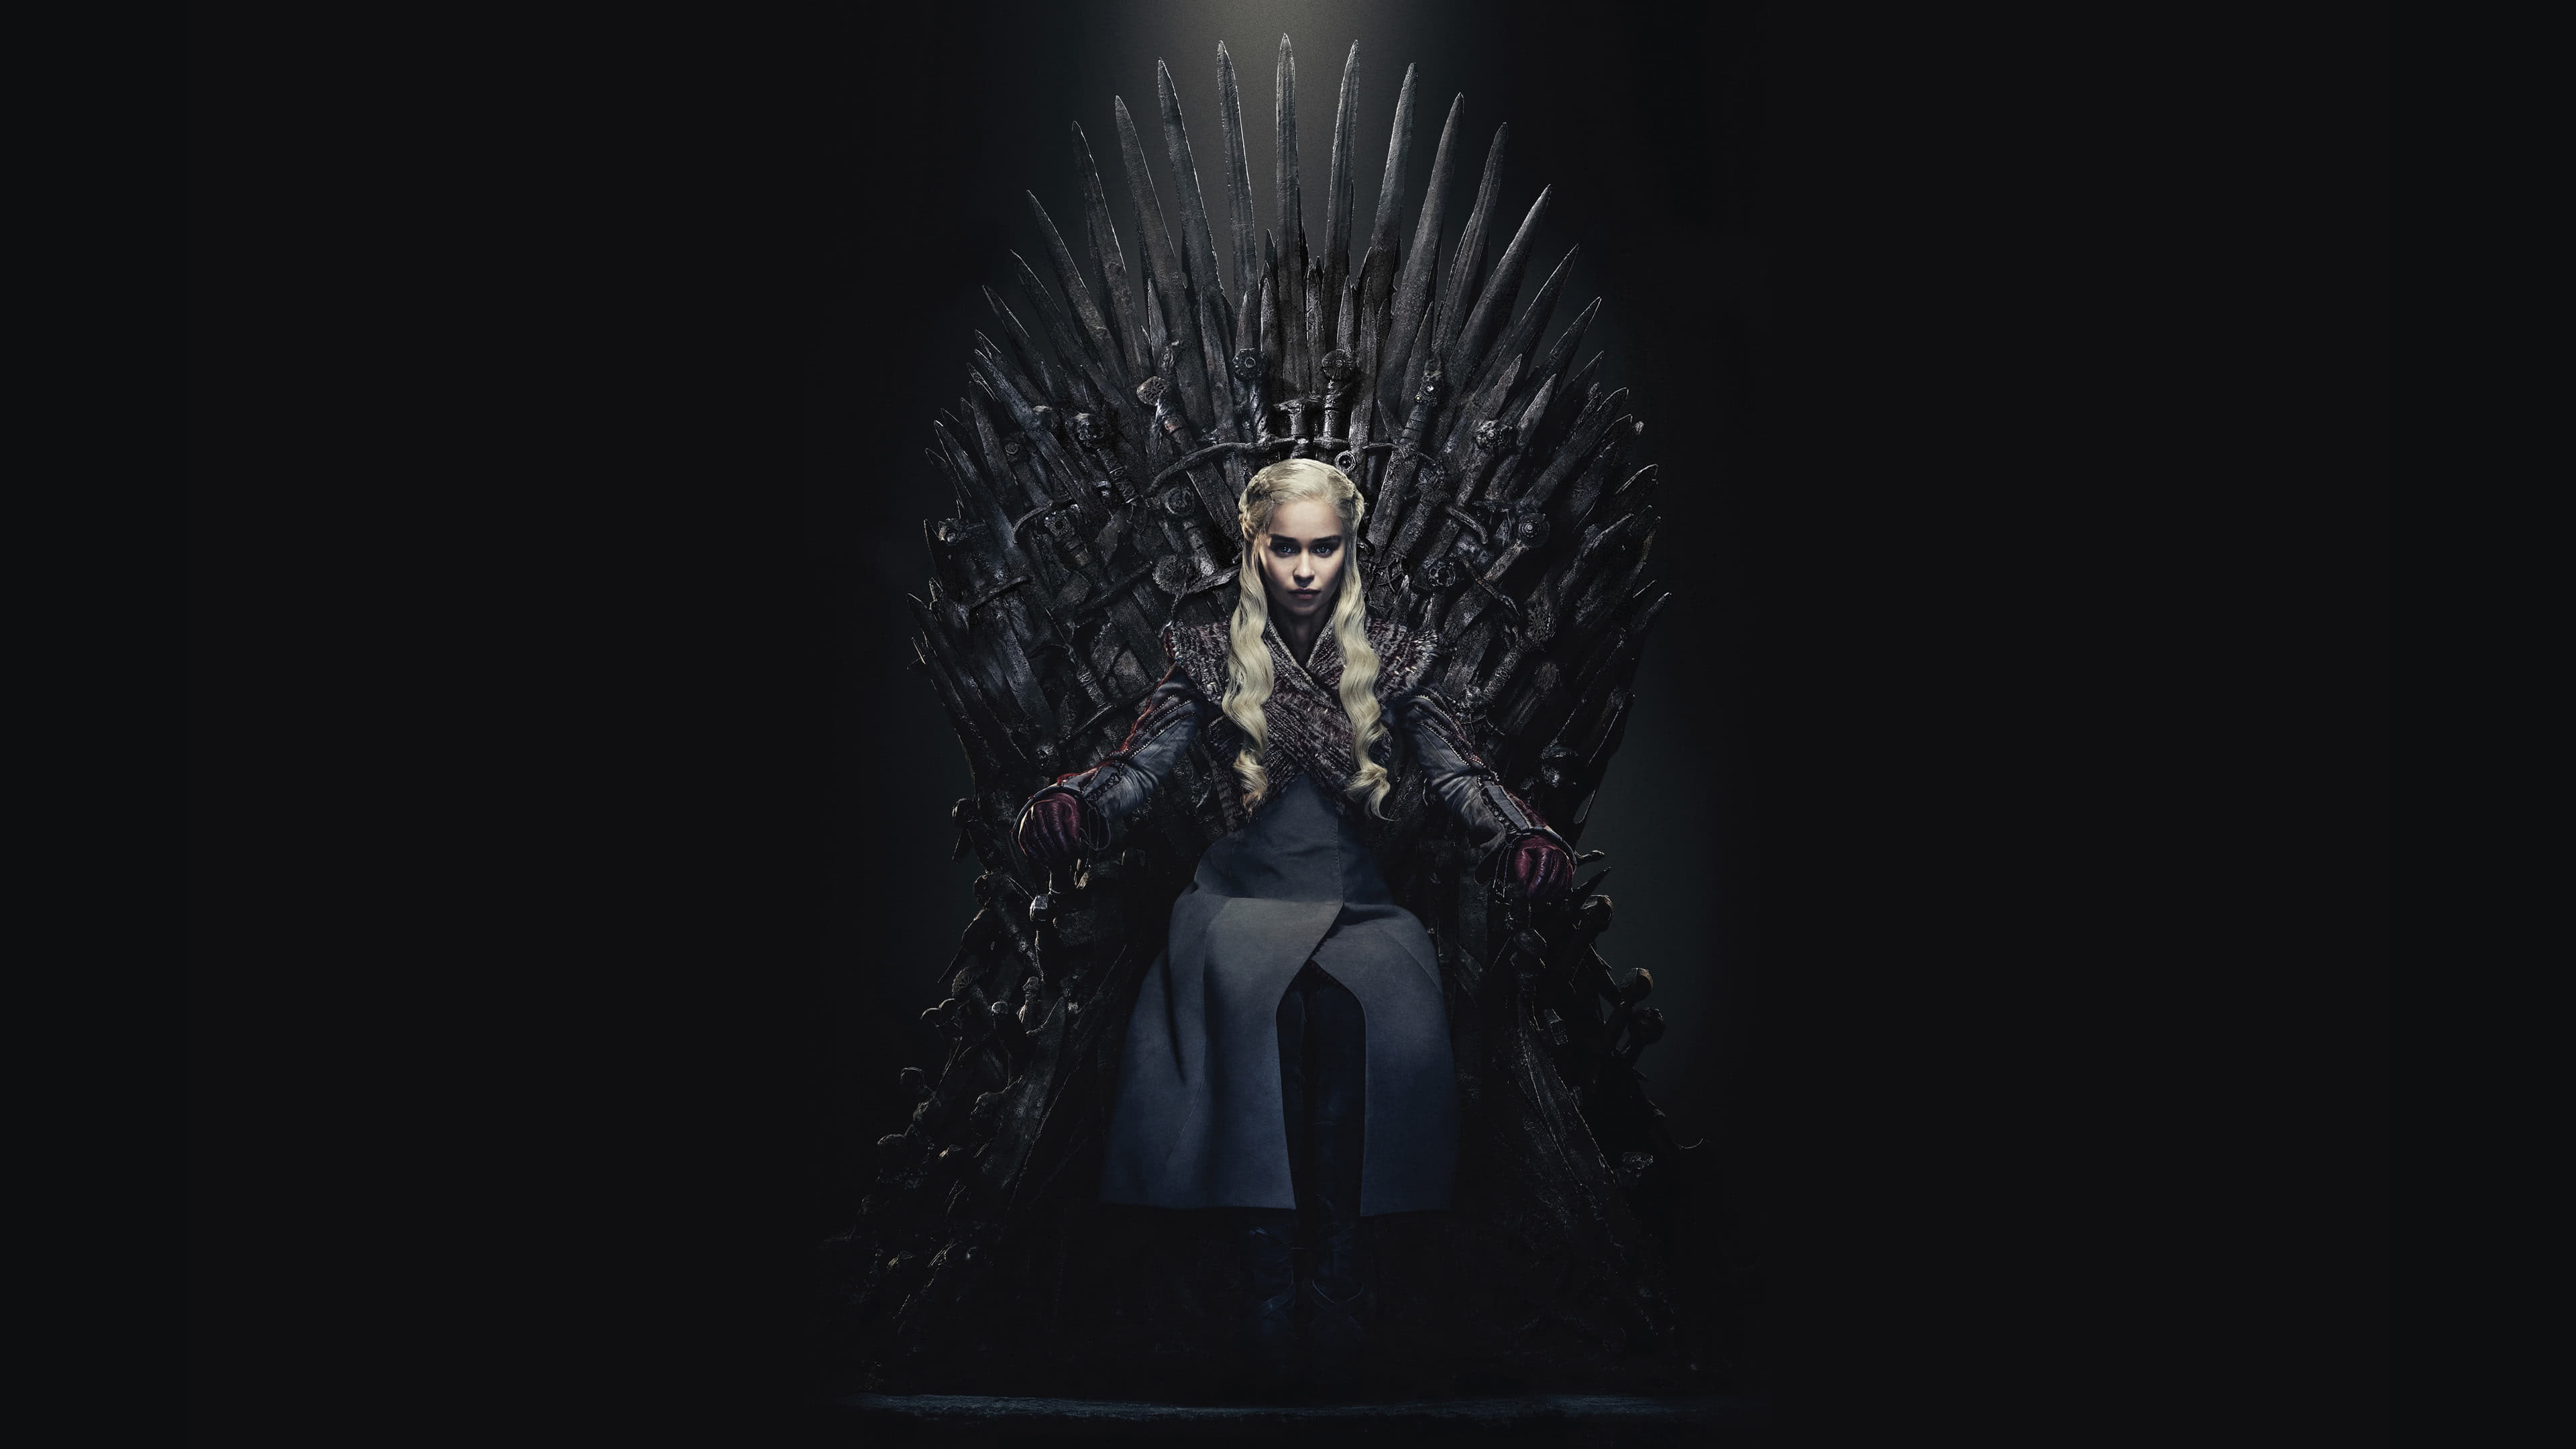 Game of Thrones, Iron Throne, Daenerys Targaryen, UHD 4K wallpaper, 3840x2160 4K Desktop